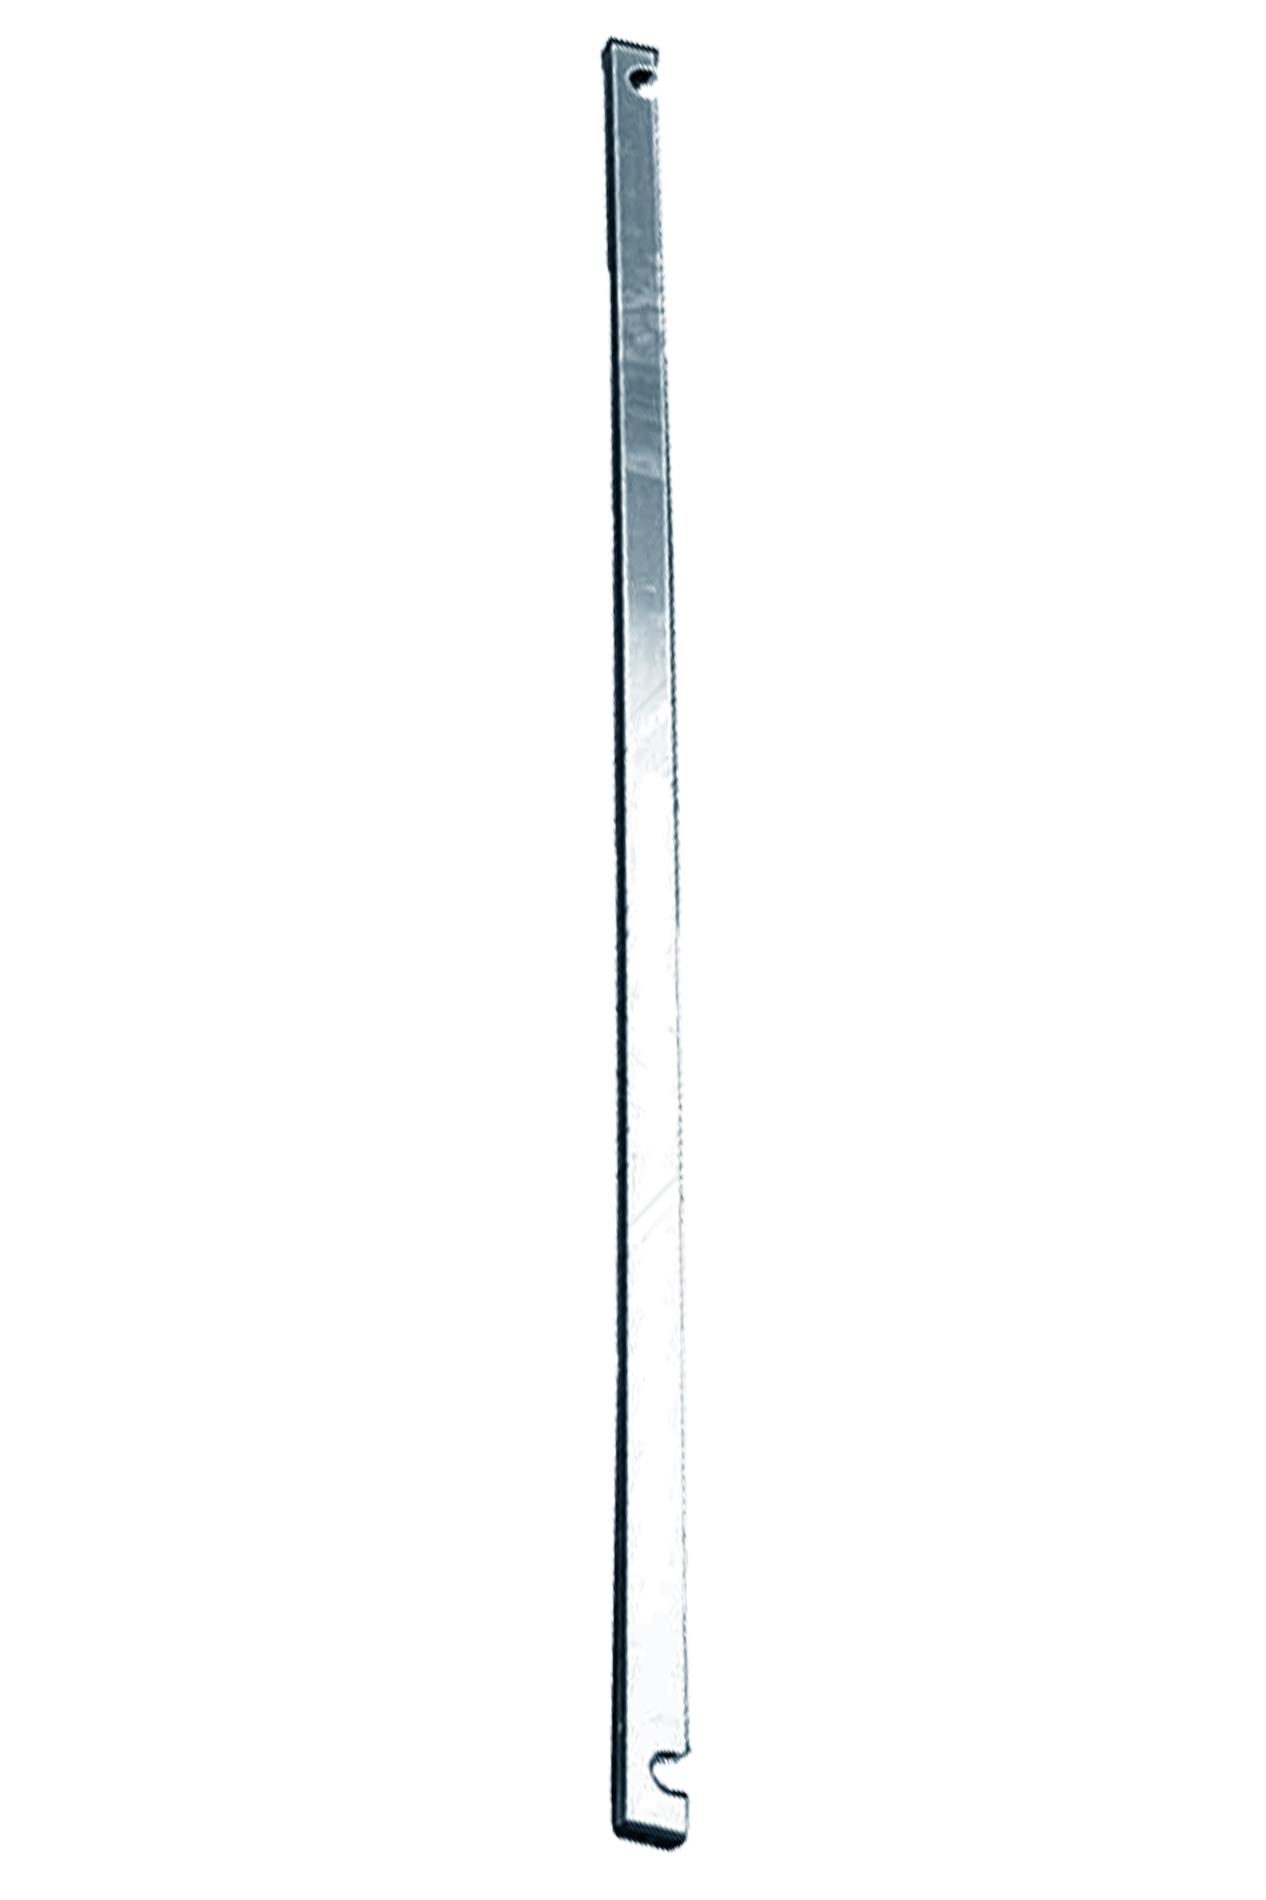 Дополнительное изображение Stabilo серии 1000 рабочая высота 11,2 м, размер площадки (3x0.75 м)